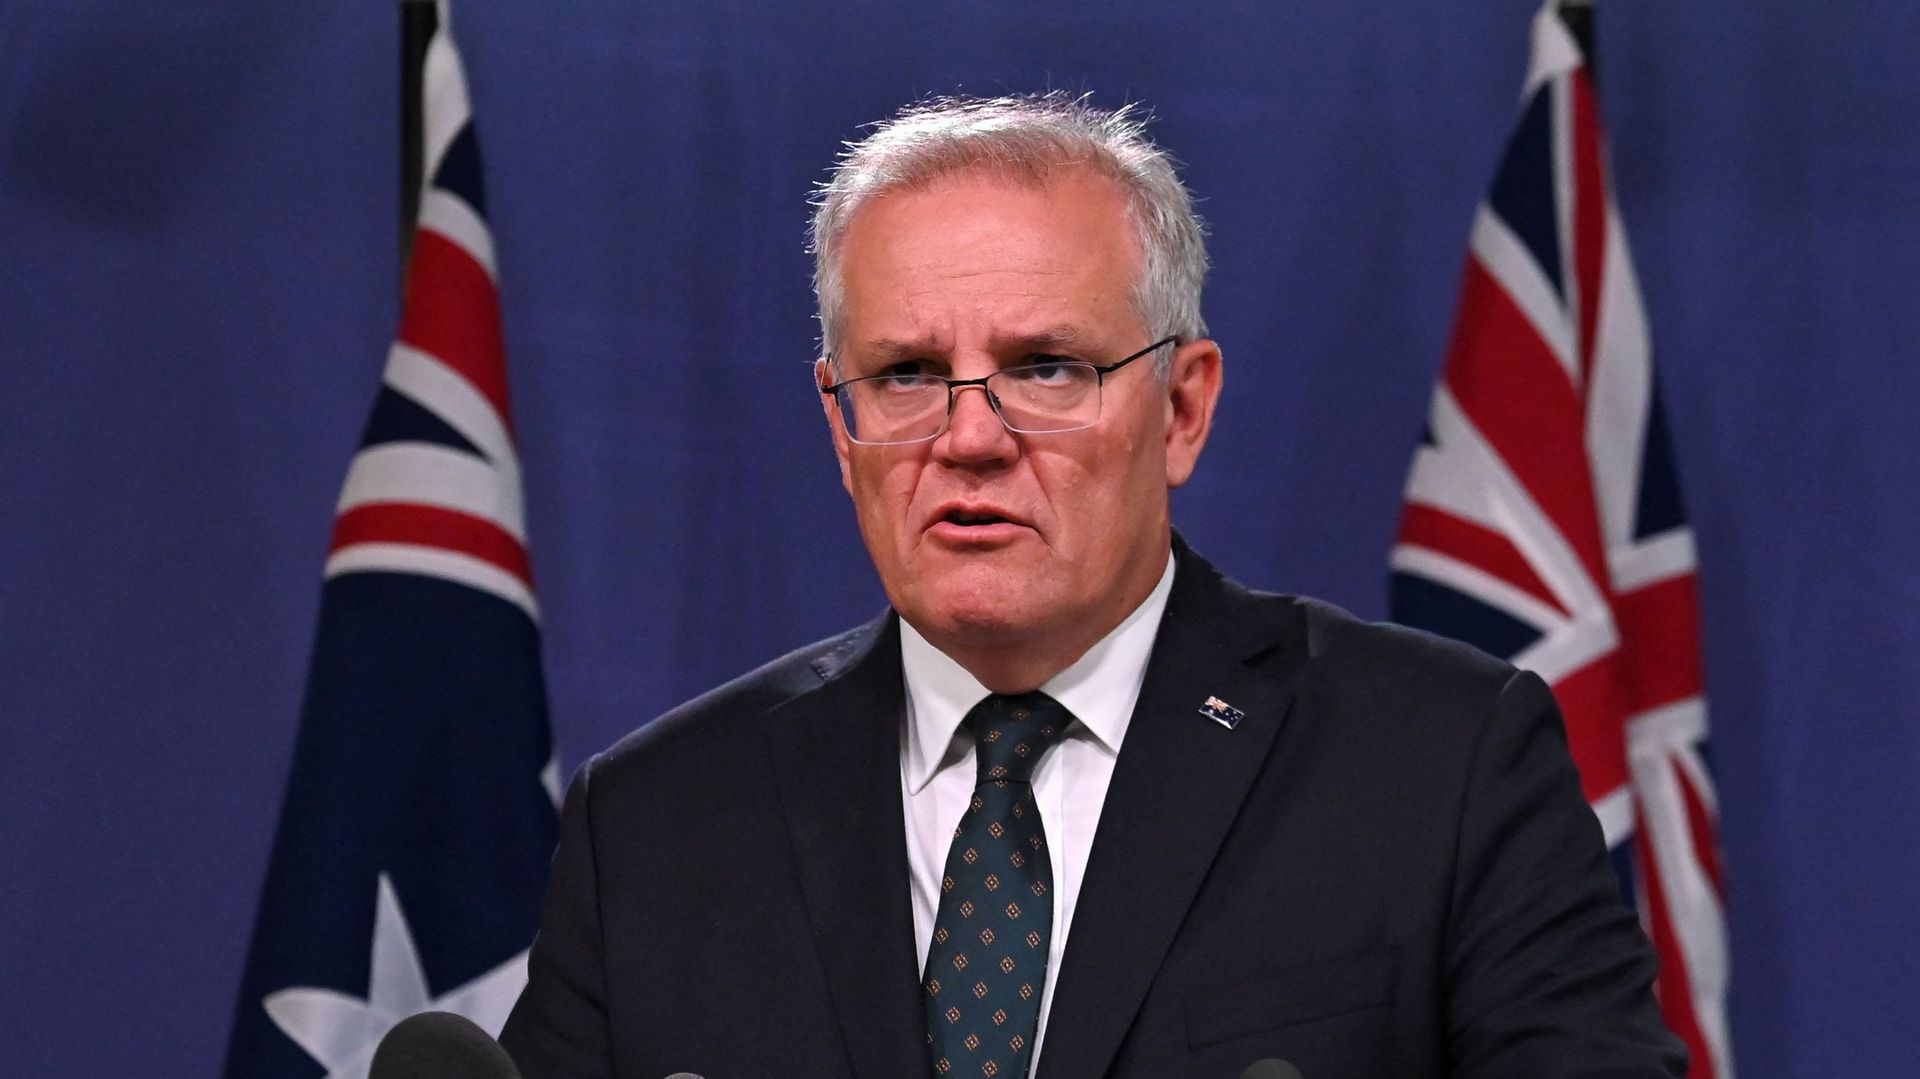 Le Premier ministre australien, Scott Morrison annonce des sanctions à l'encontre de hauts responsables russes suite à l'invasion de l'est de l'Ukraine, lors d'une conférence de presse à Sydney le 23 février 2022.